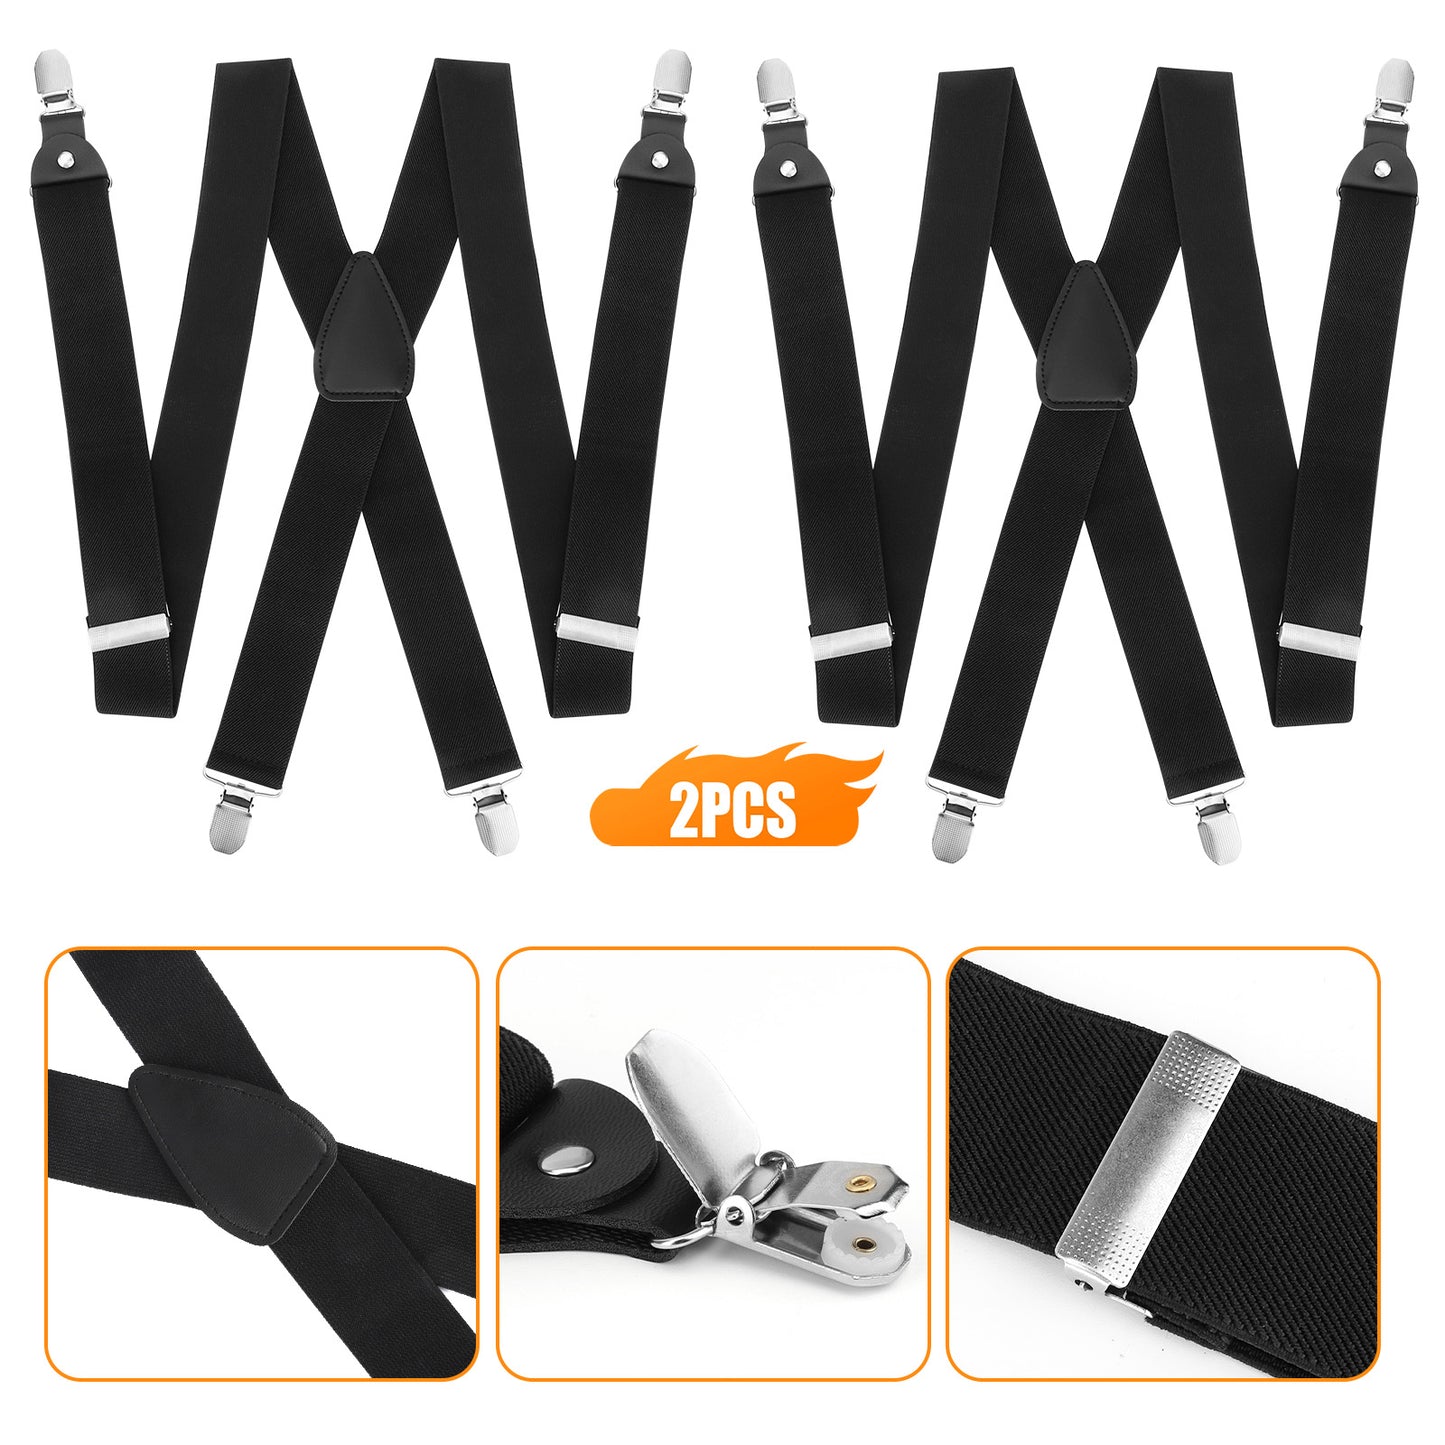 2Pcs Men X-Shaped clips pants Adjustable suspender